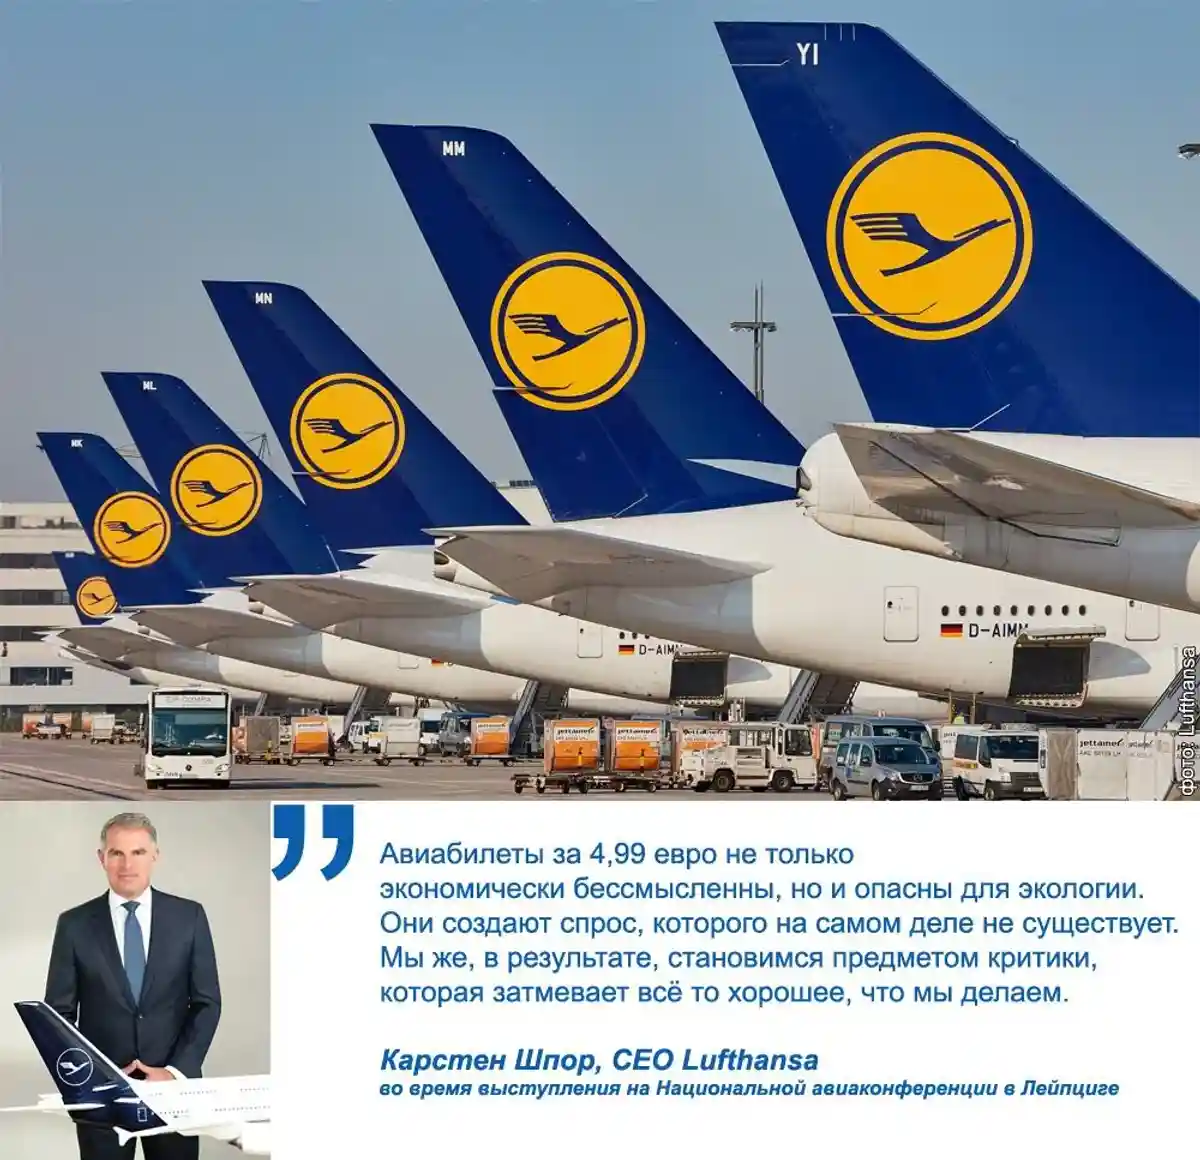 Карстен Шпор, генеральный директор Lufthansa. Фото: Avianews.com / Twitter.com